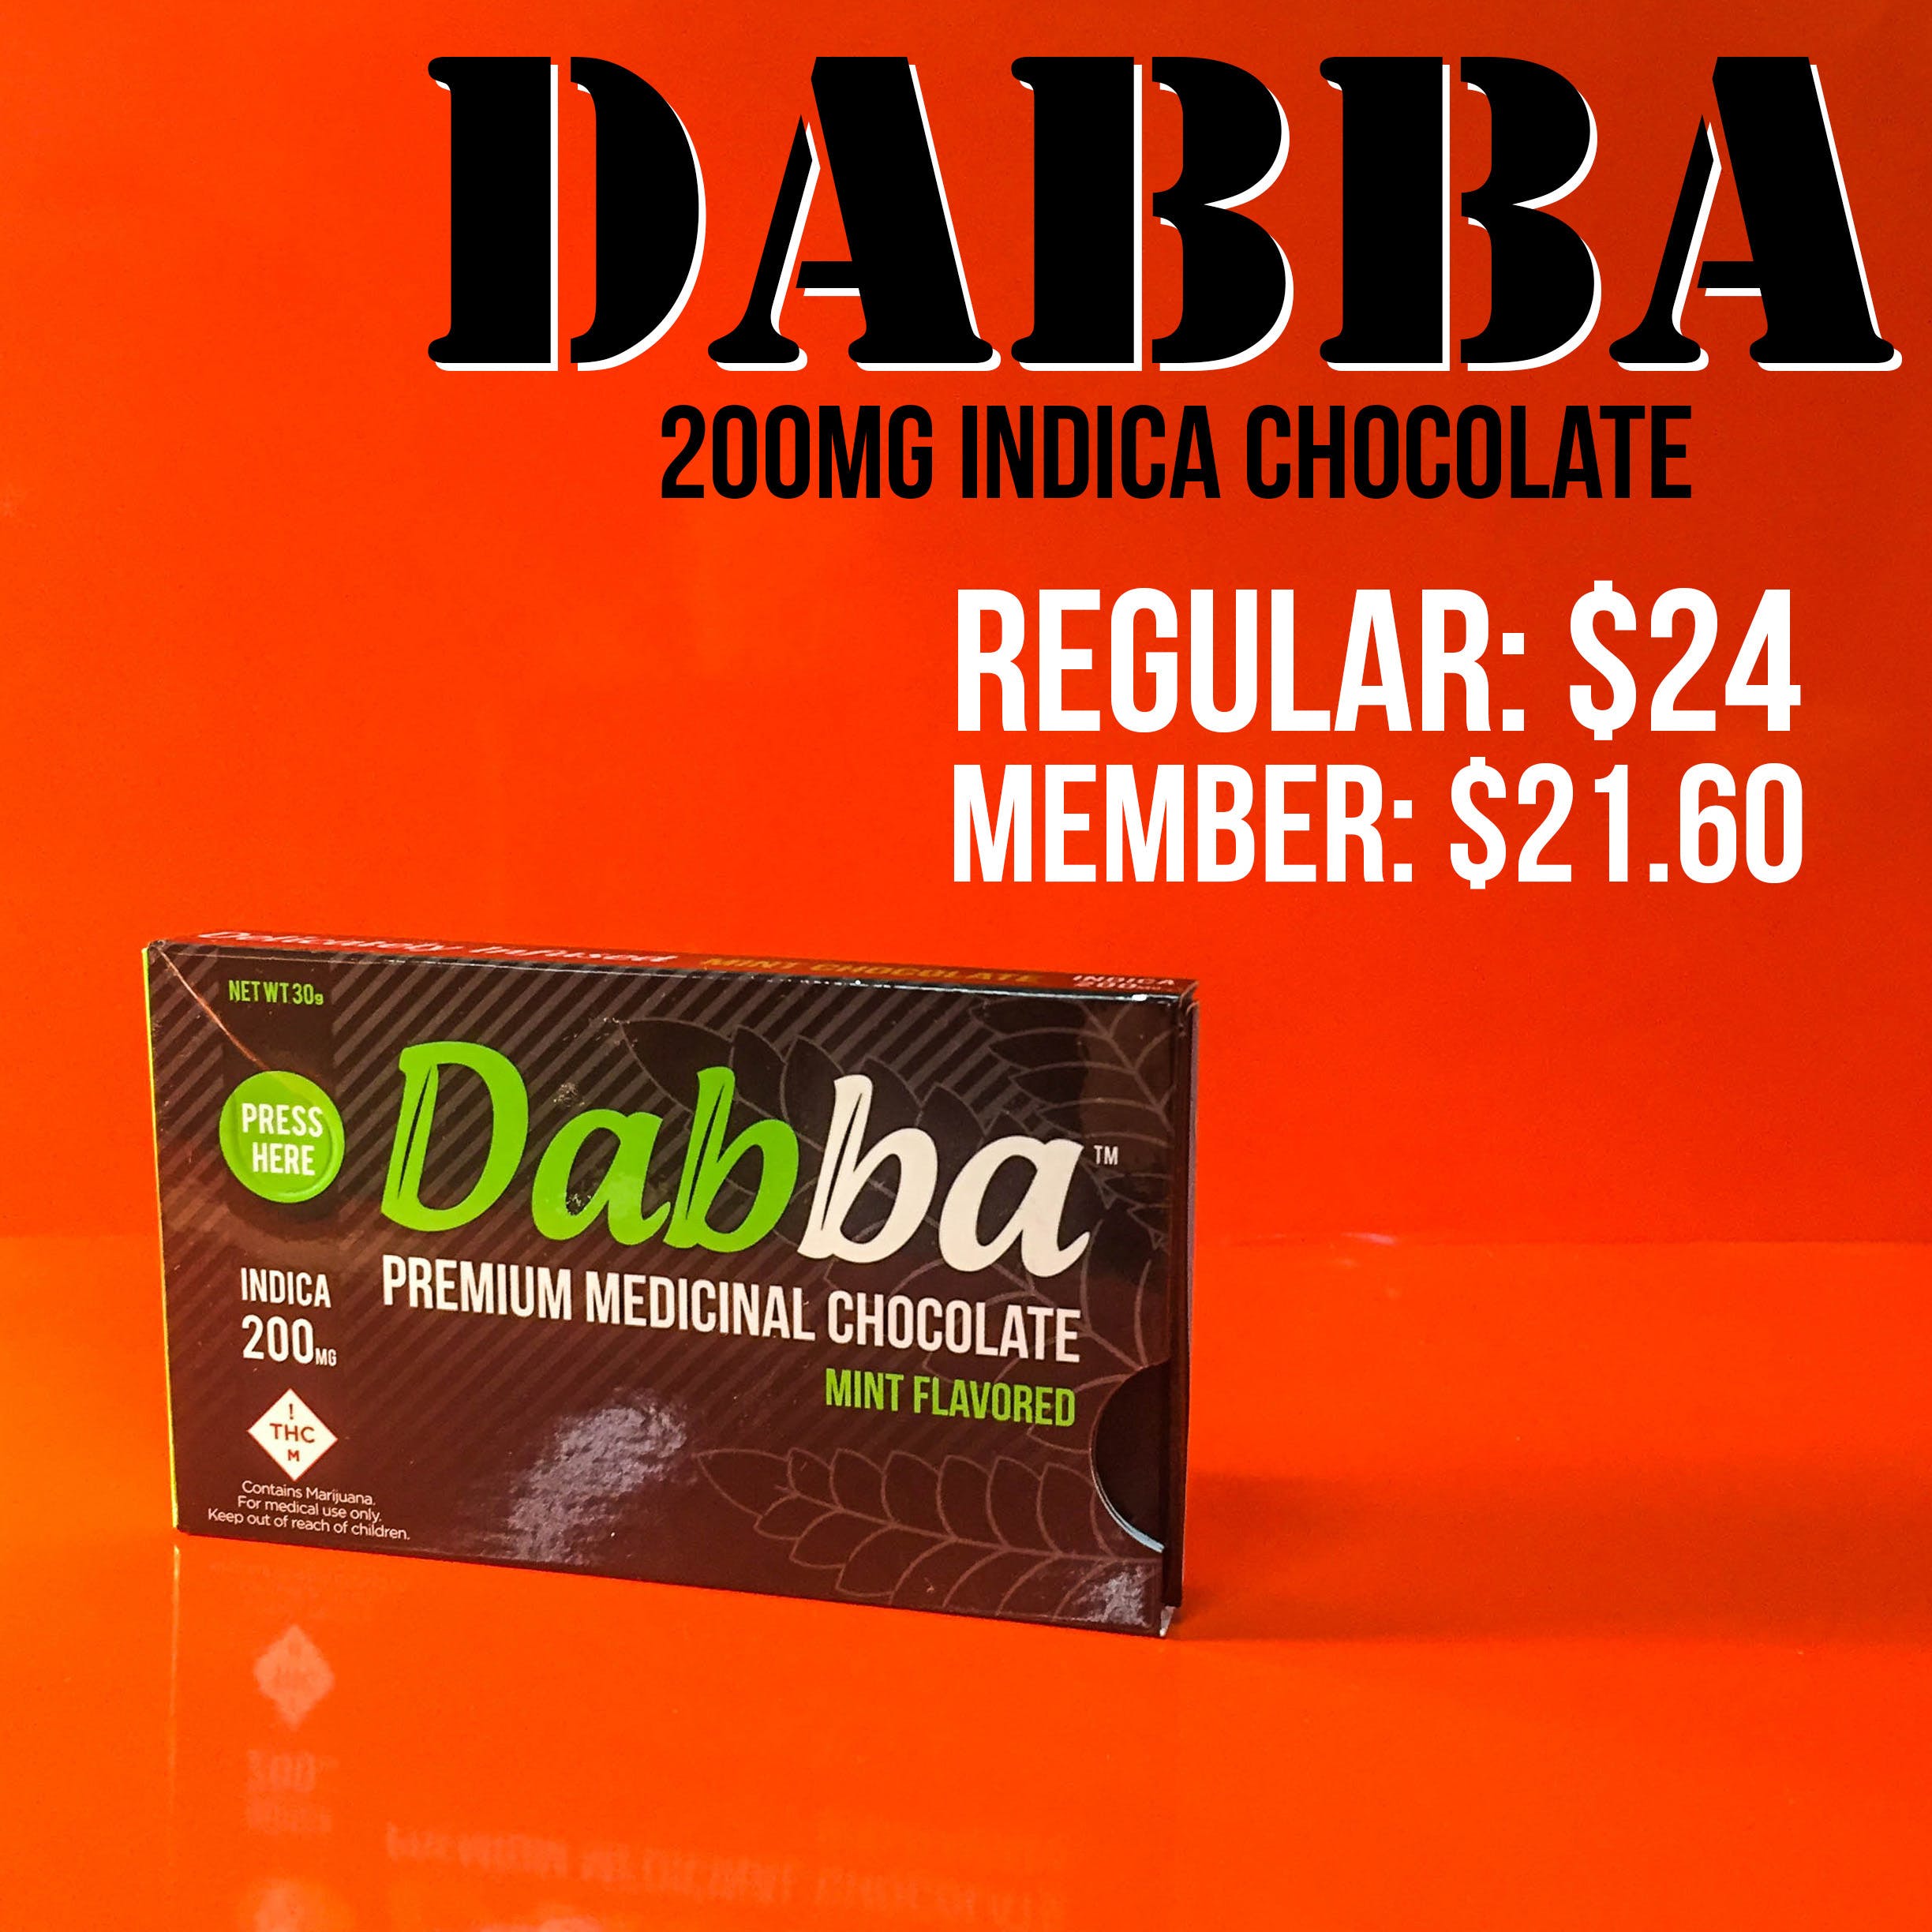 edible-dabba-chocolates-indica-200mg